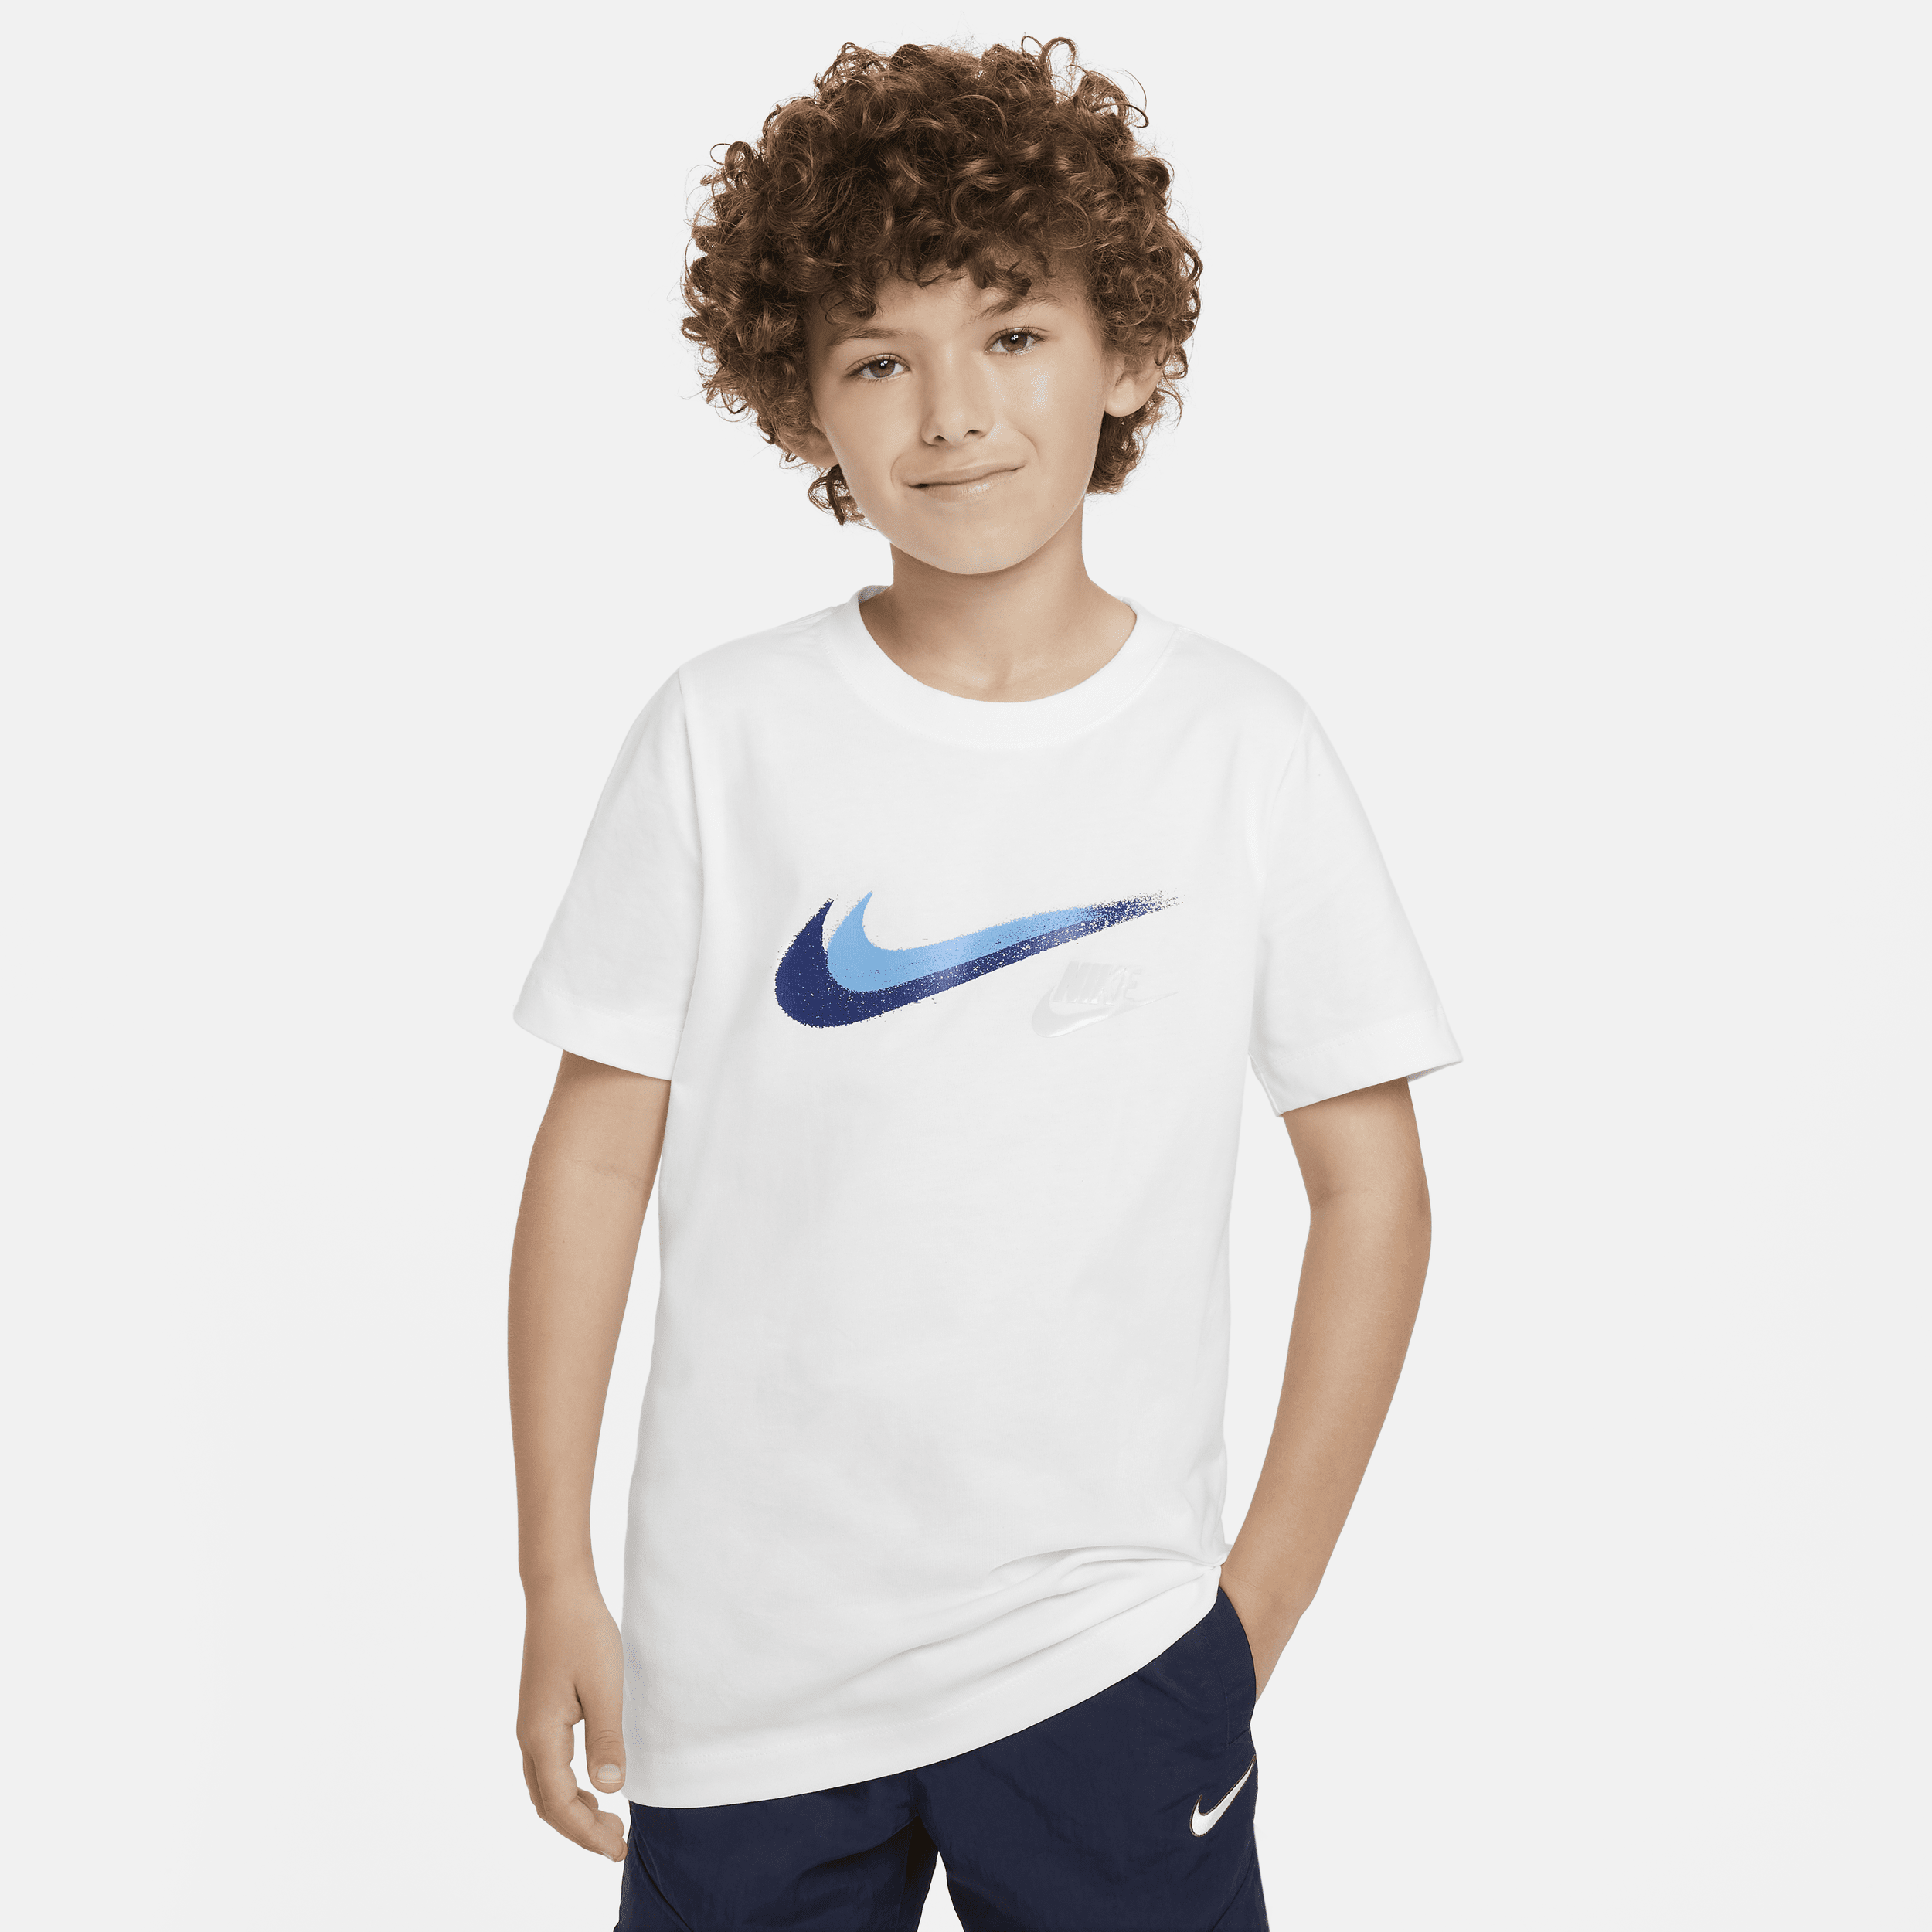 Grafisk Nike Sportswear-T-shirt til større børn (drenge) - hvid